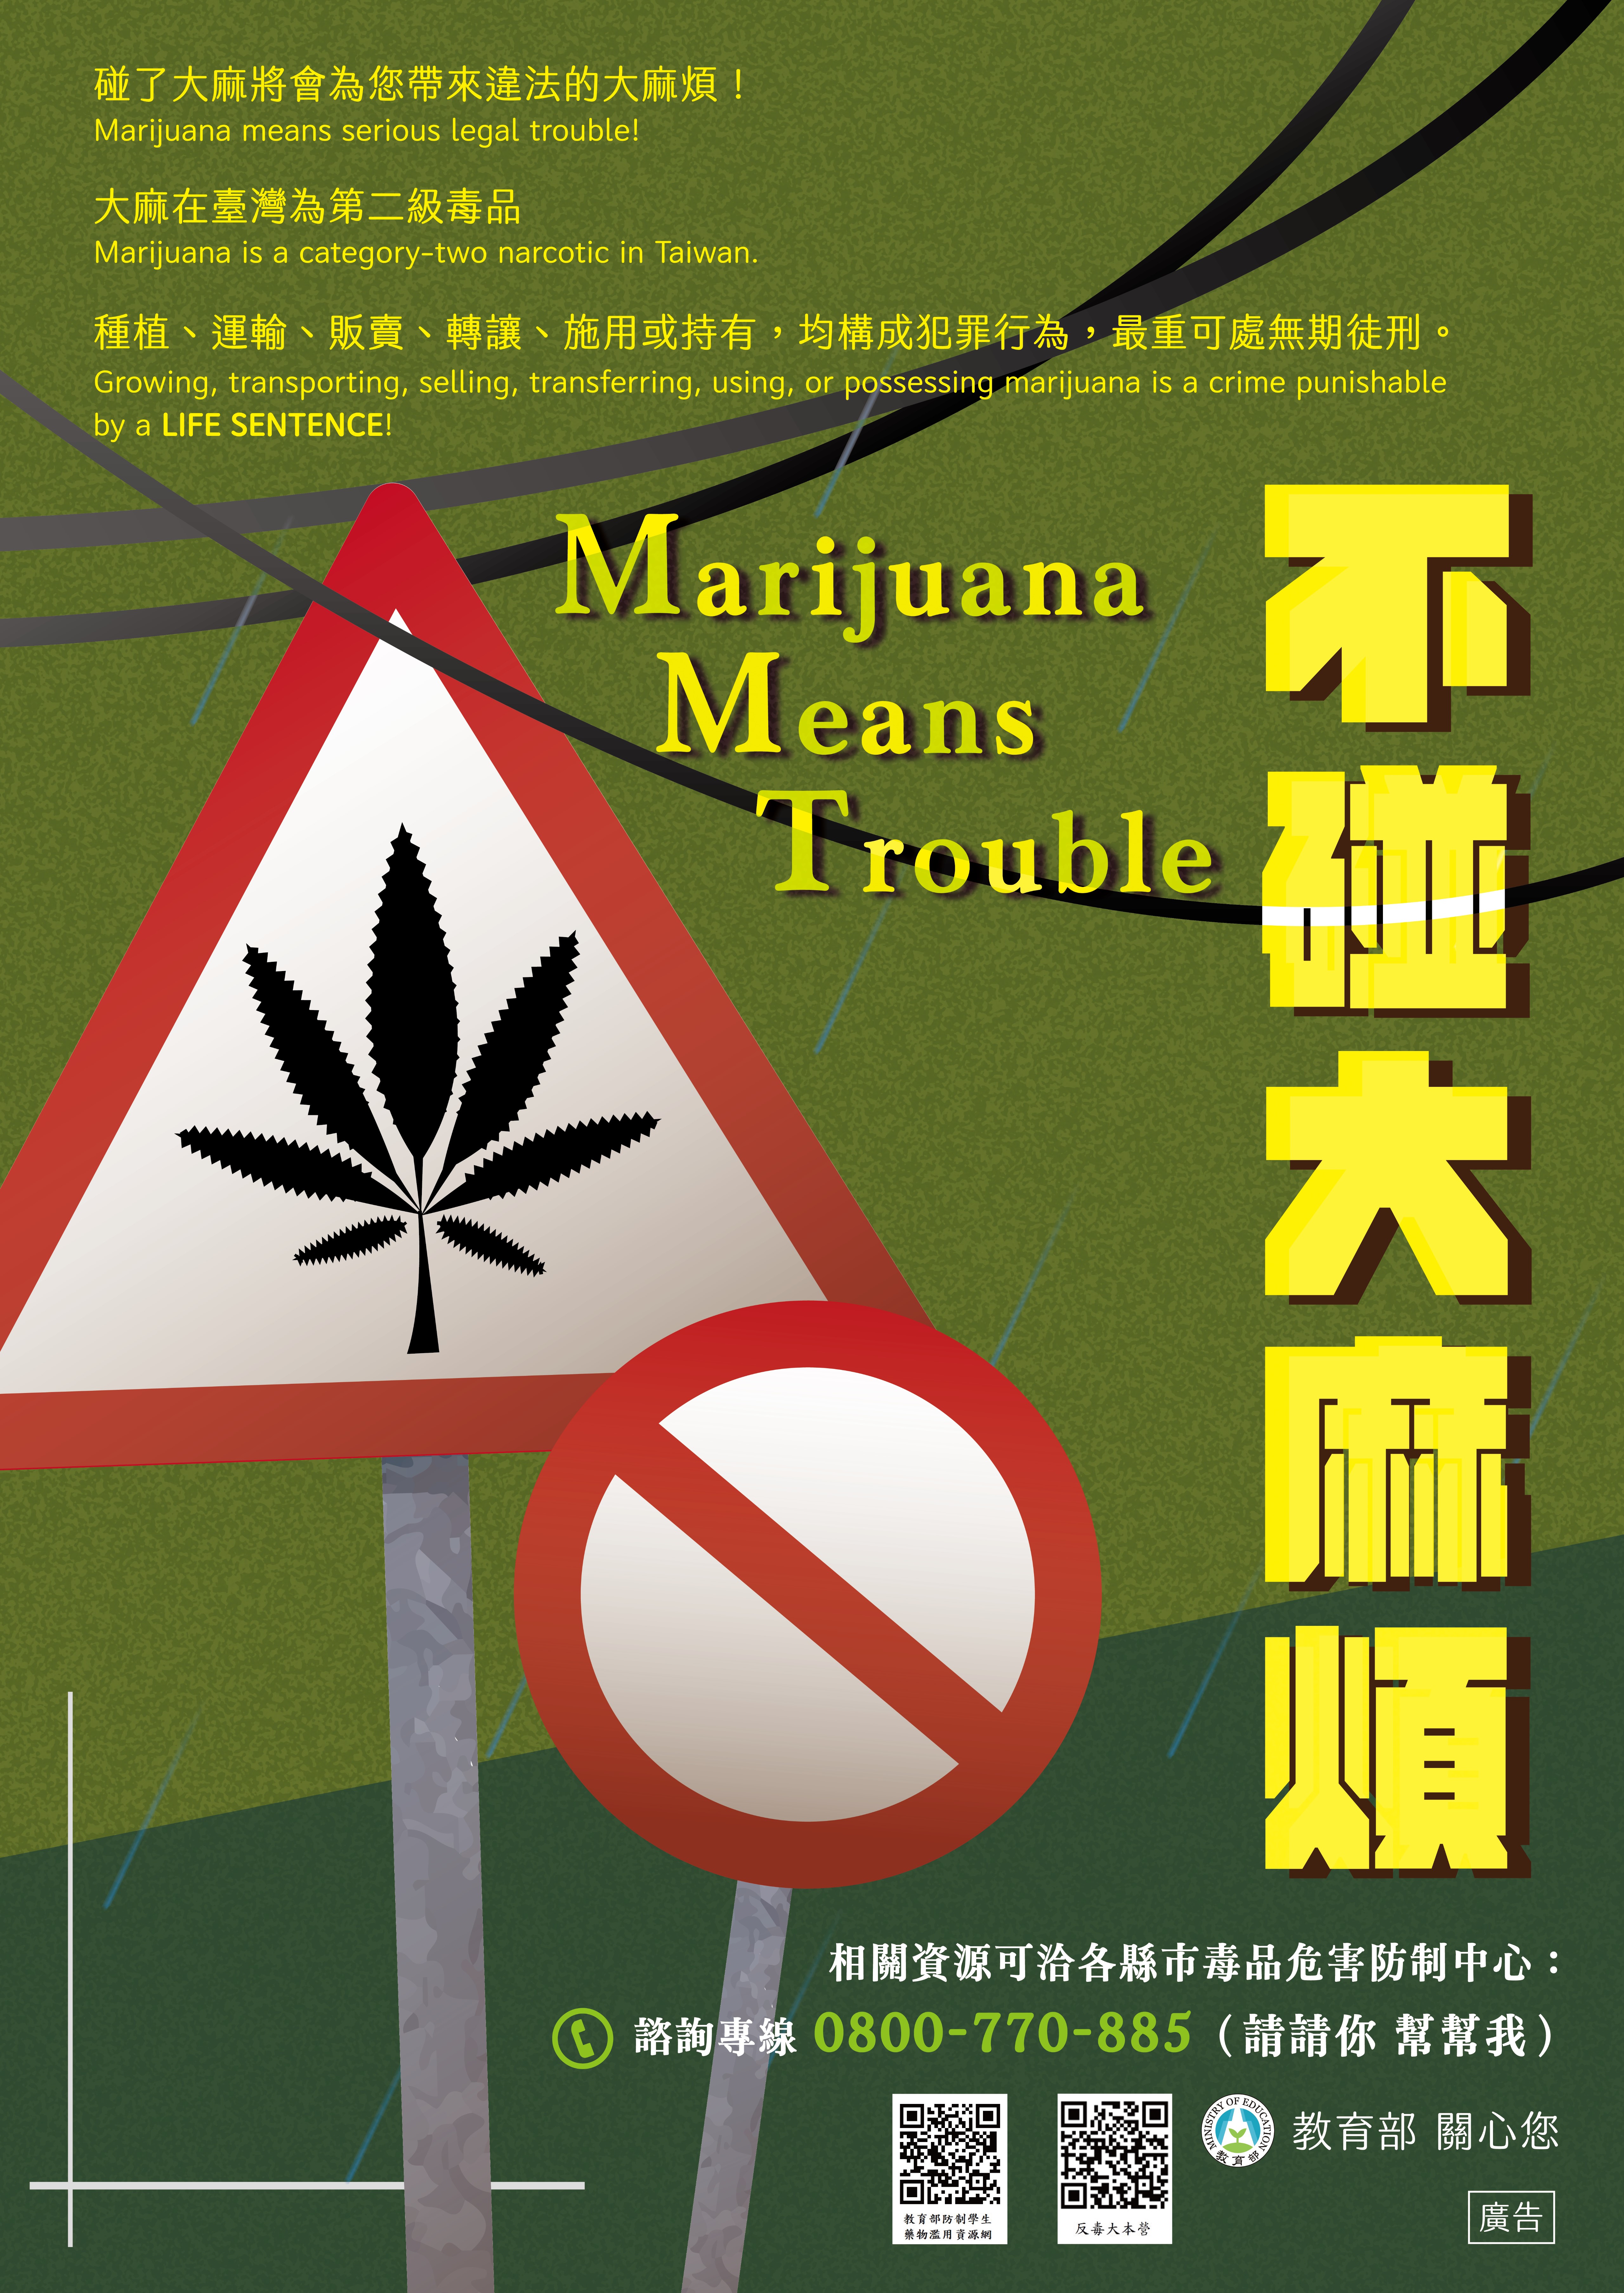 「不碰大麻煩」海報電子檔.jpg